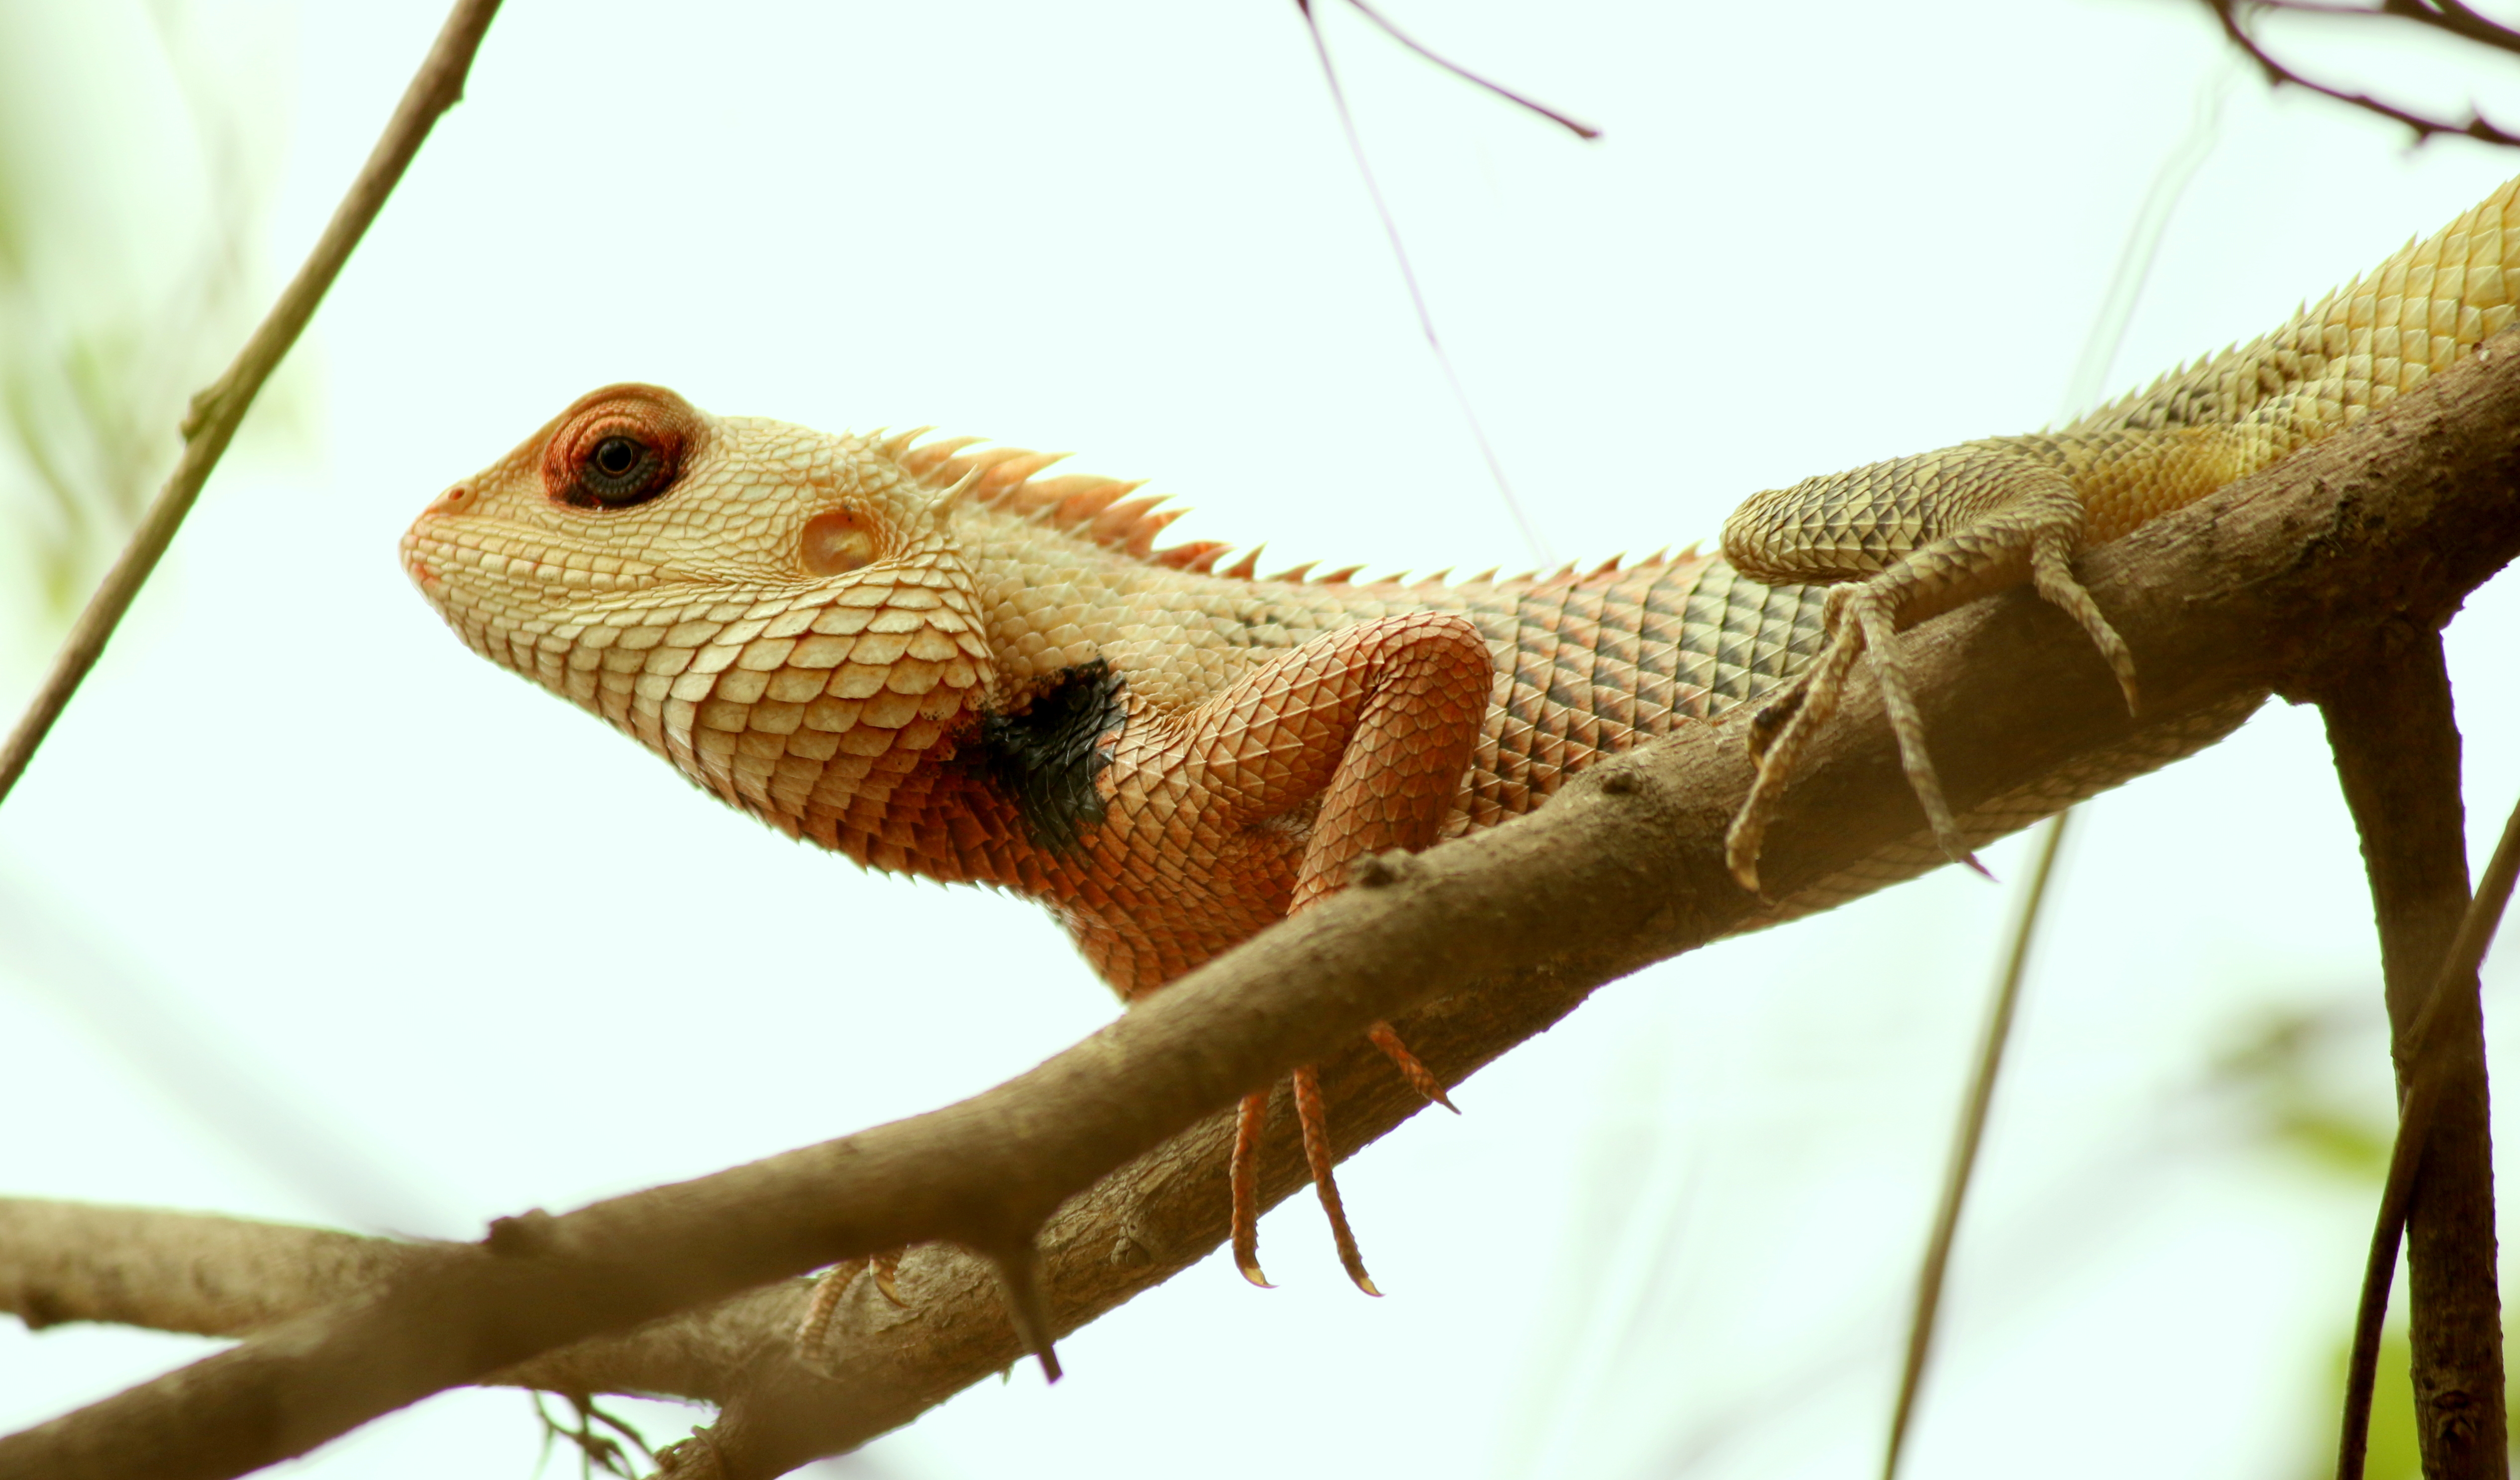 File:Lizard namely Oriental Garden Lizard.jpg - Wikimedia Commons